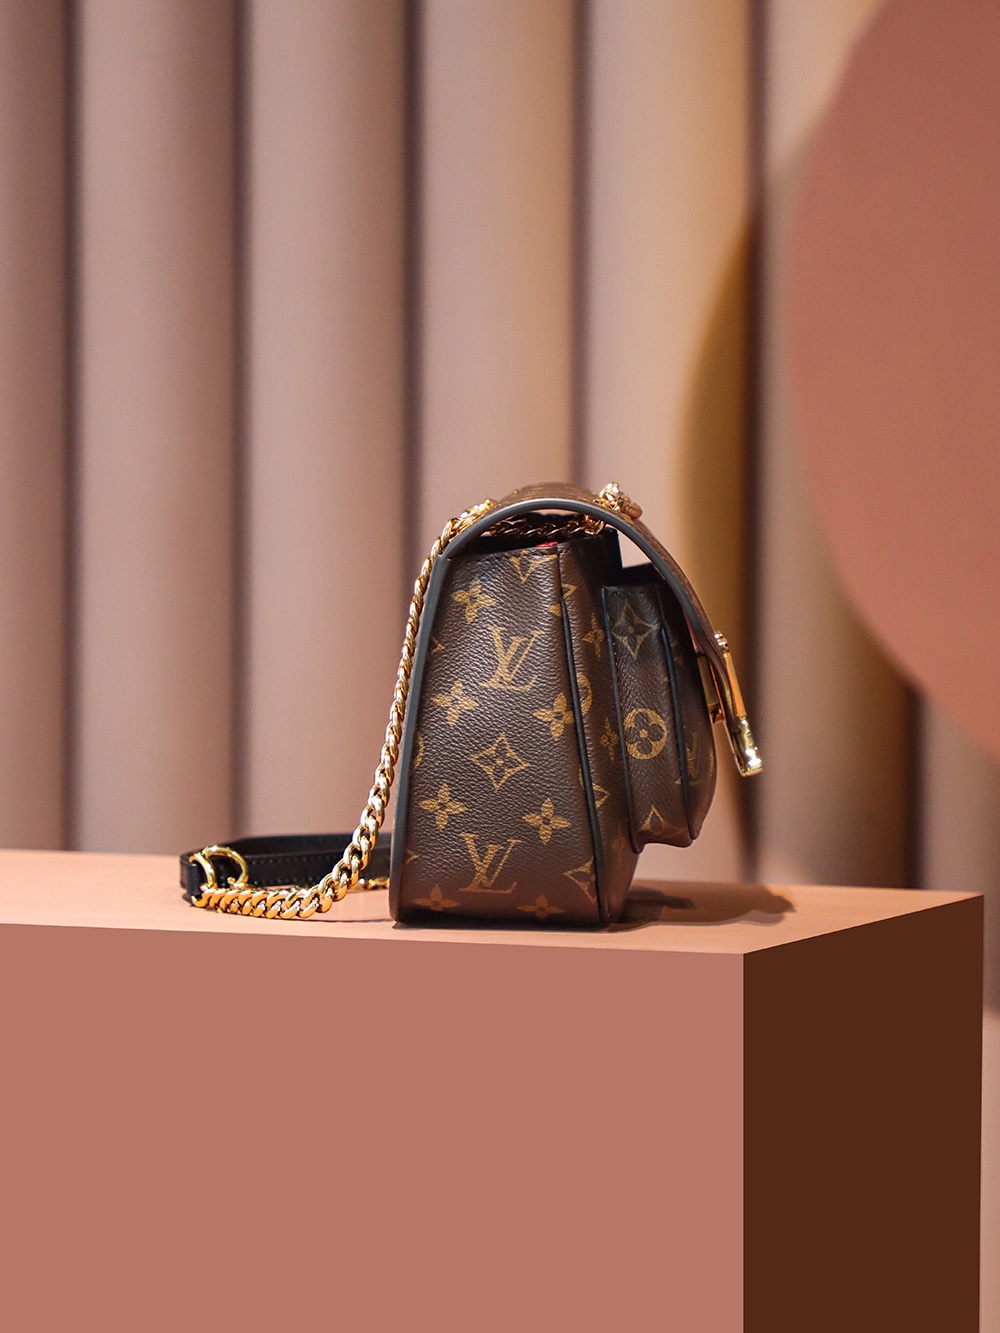 Shop Louis Vuitton Passy (M45592) by design◇base